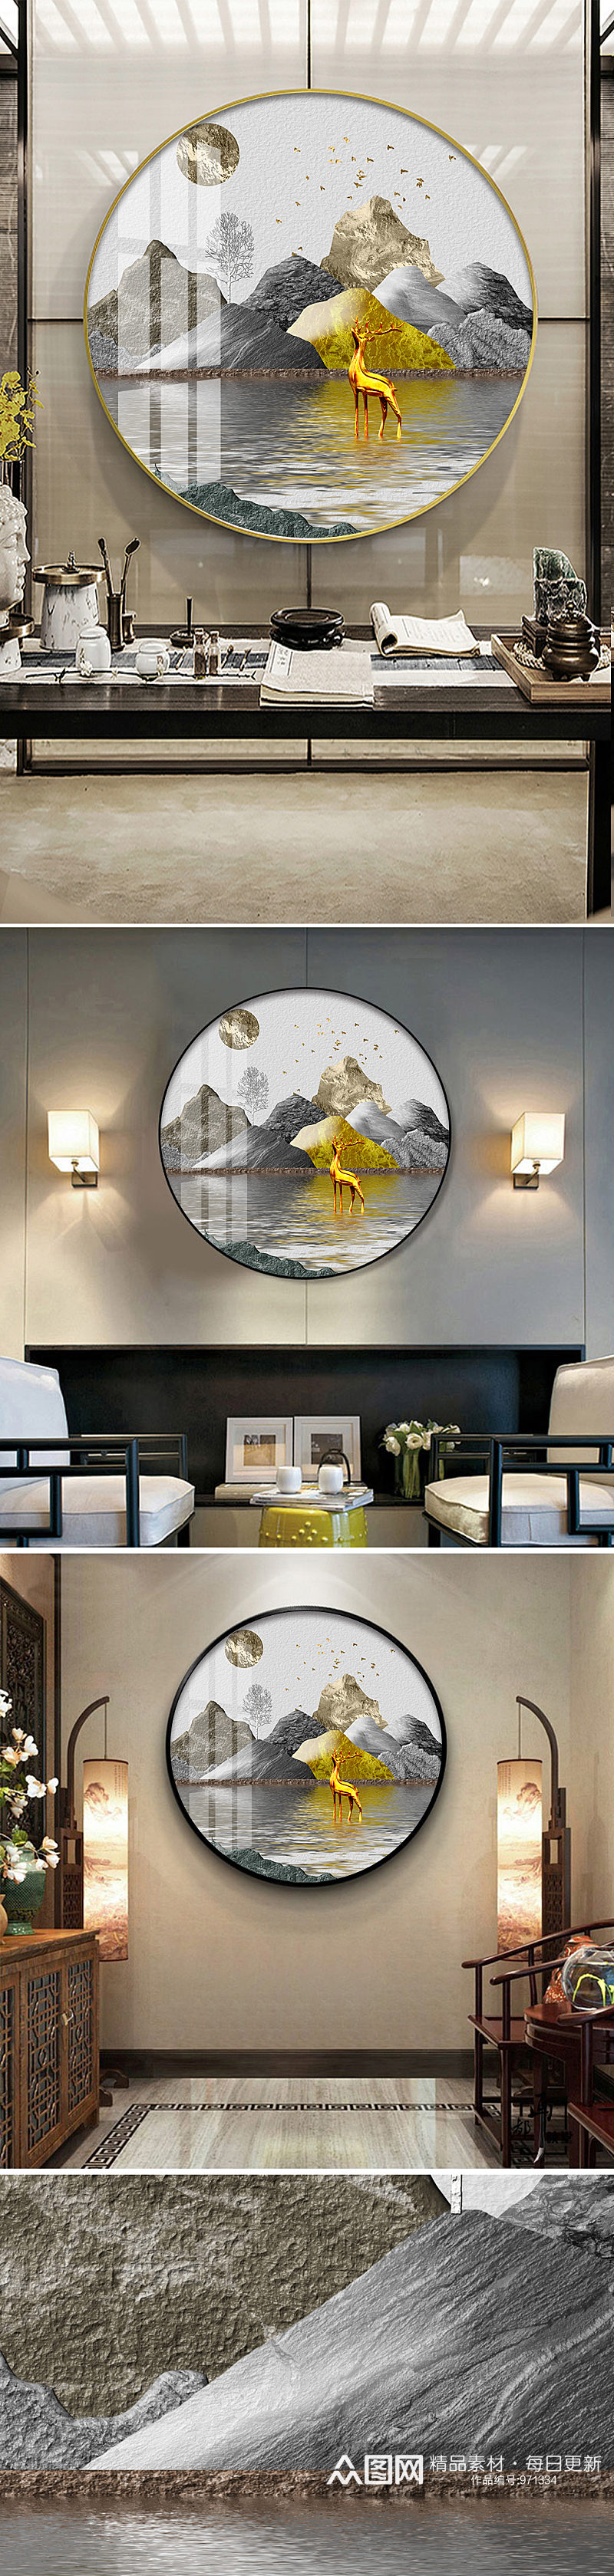 新中式抽象金色山水麋鹿圆形装饰画素材